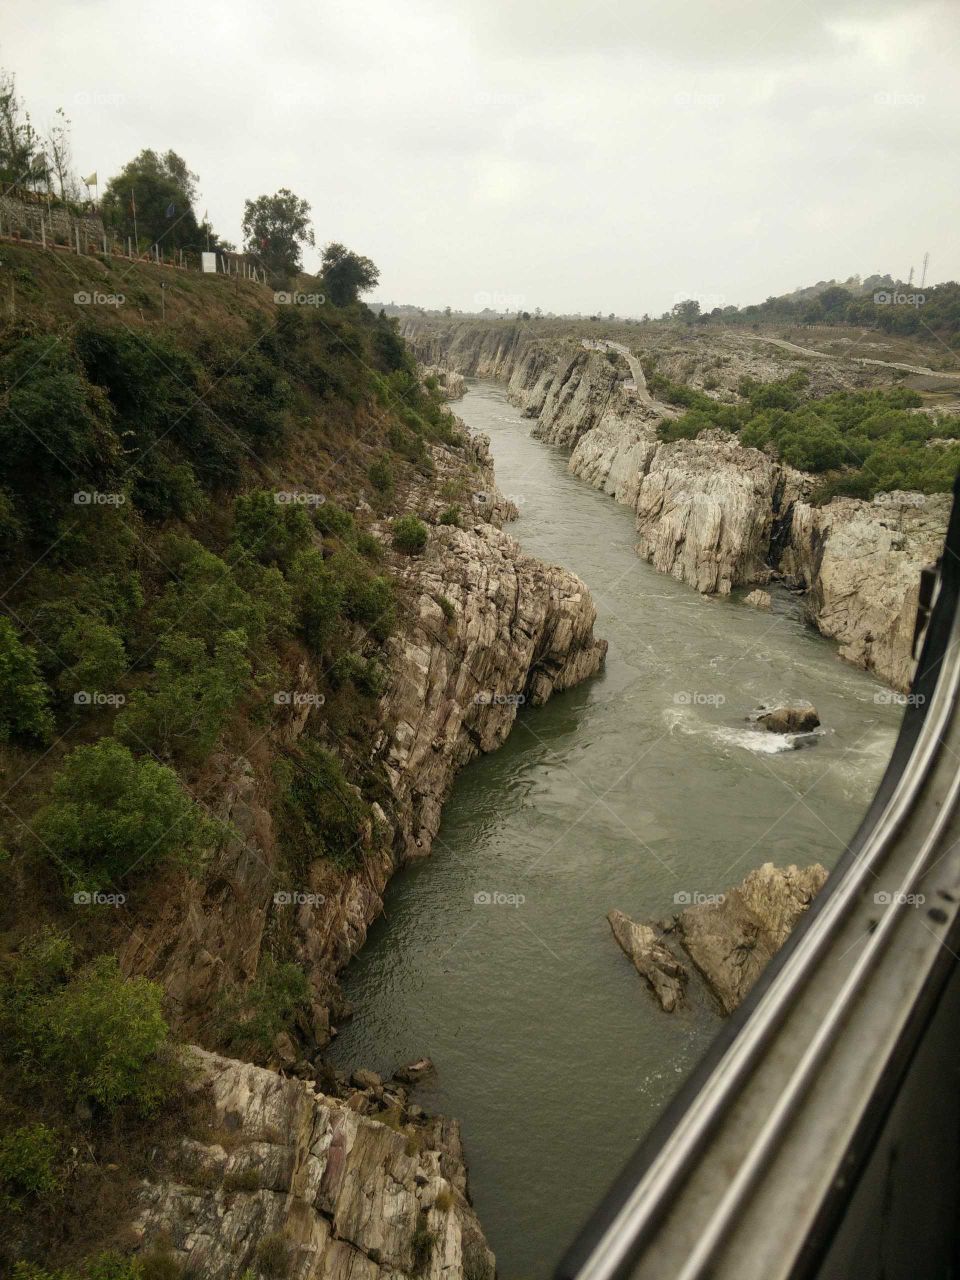 Narmada river in India